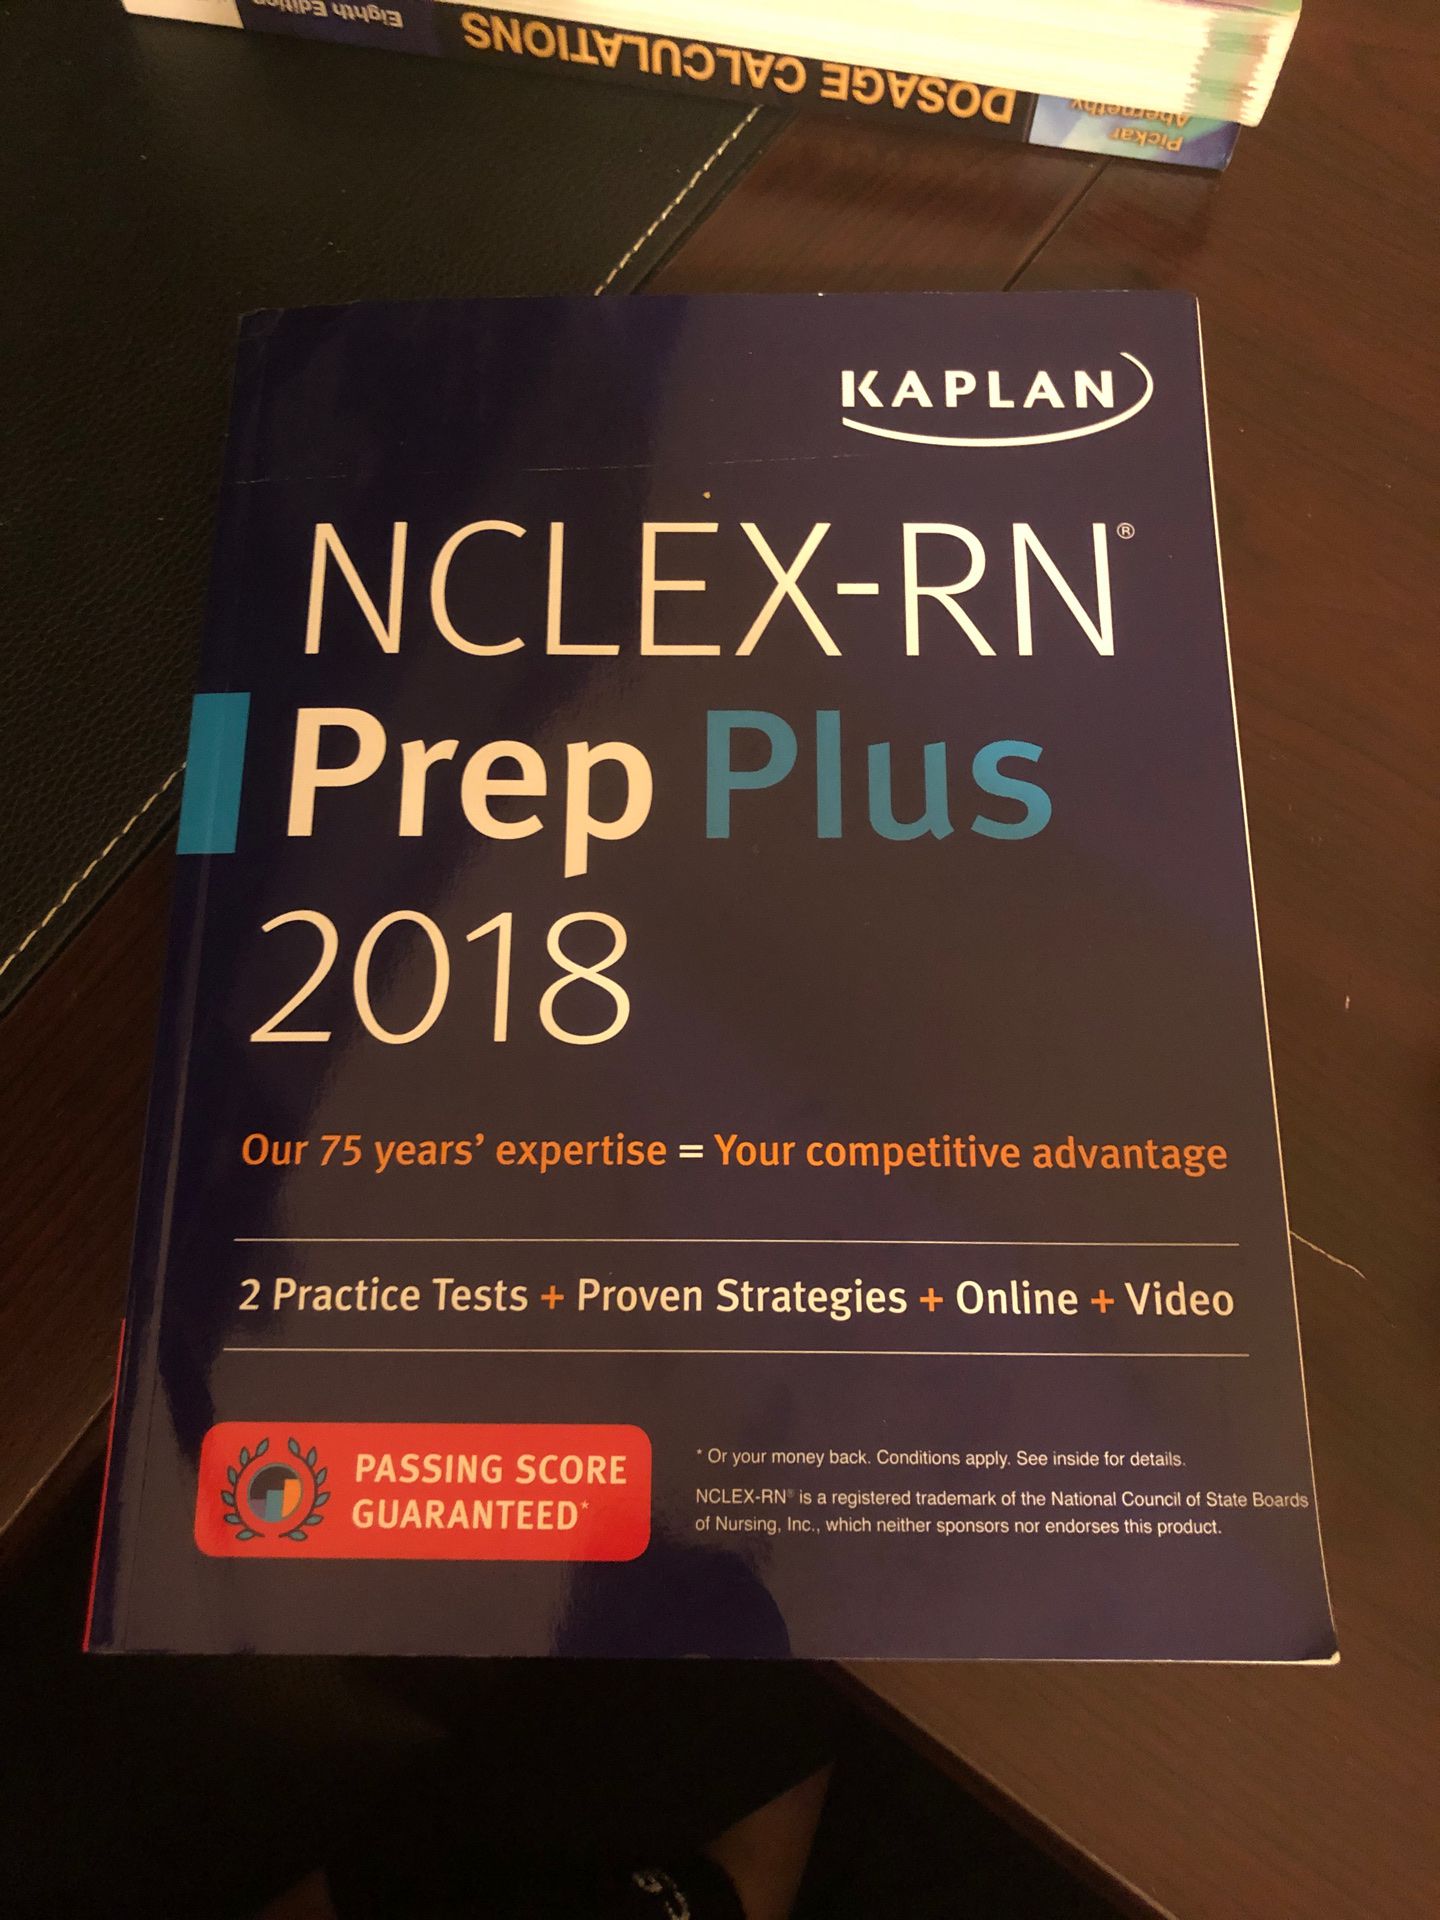 NCLEX-RN prep Plus 2018